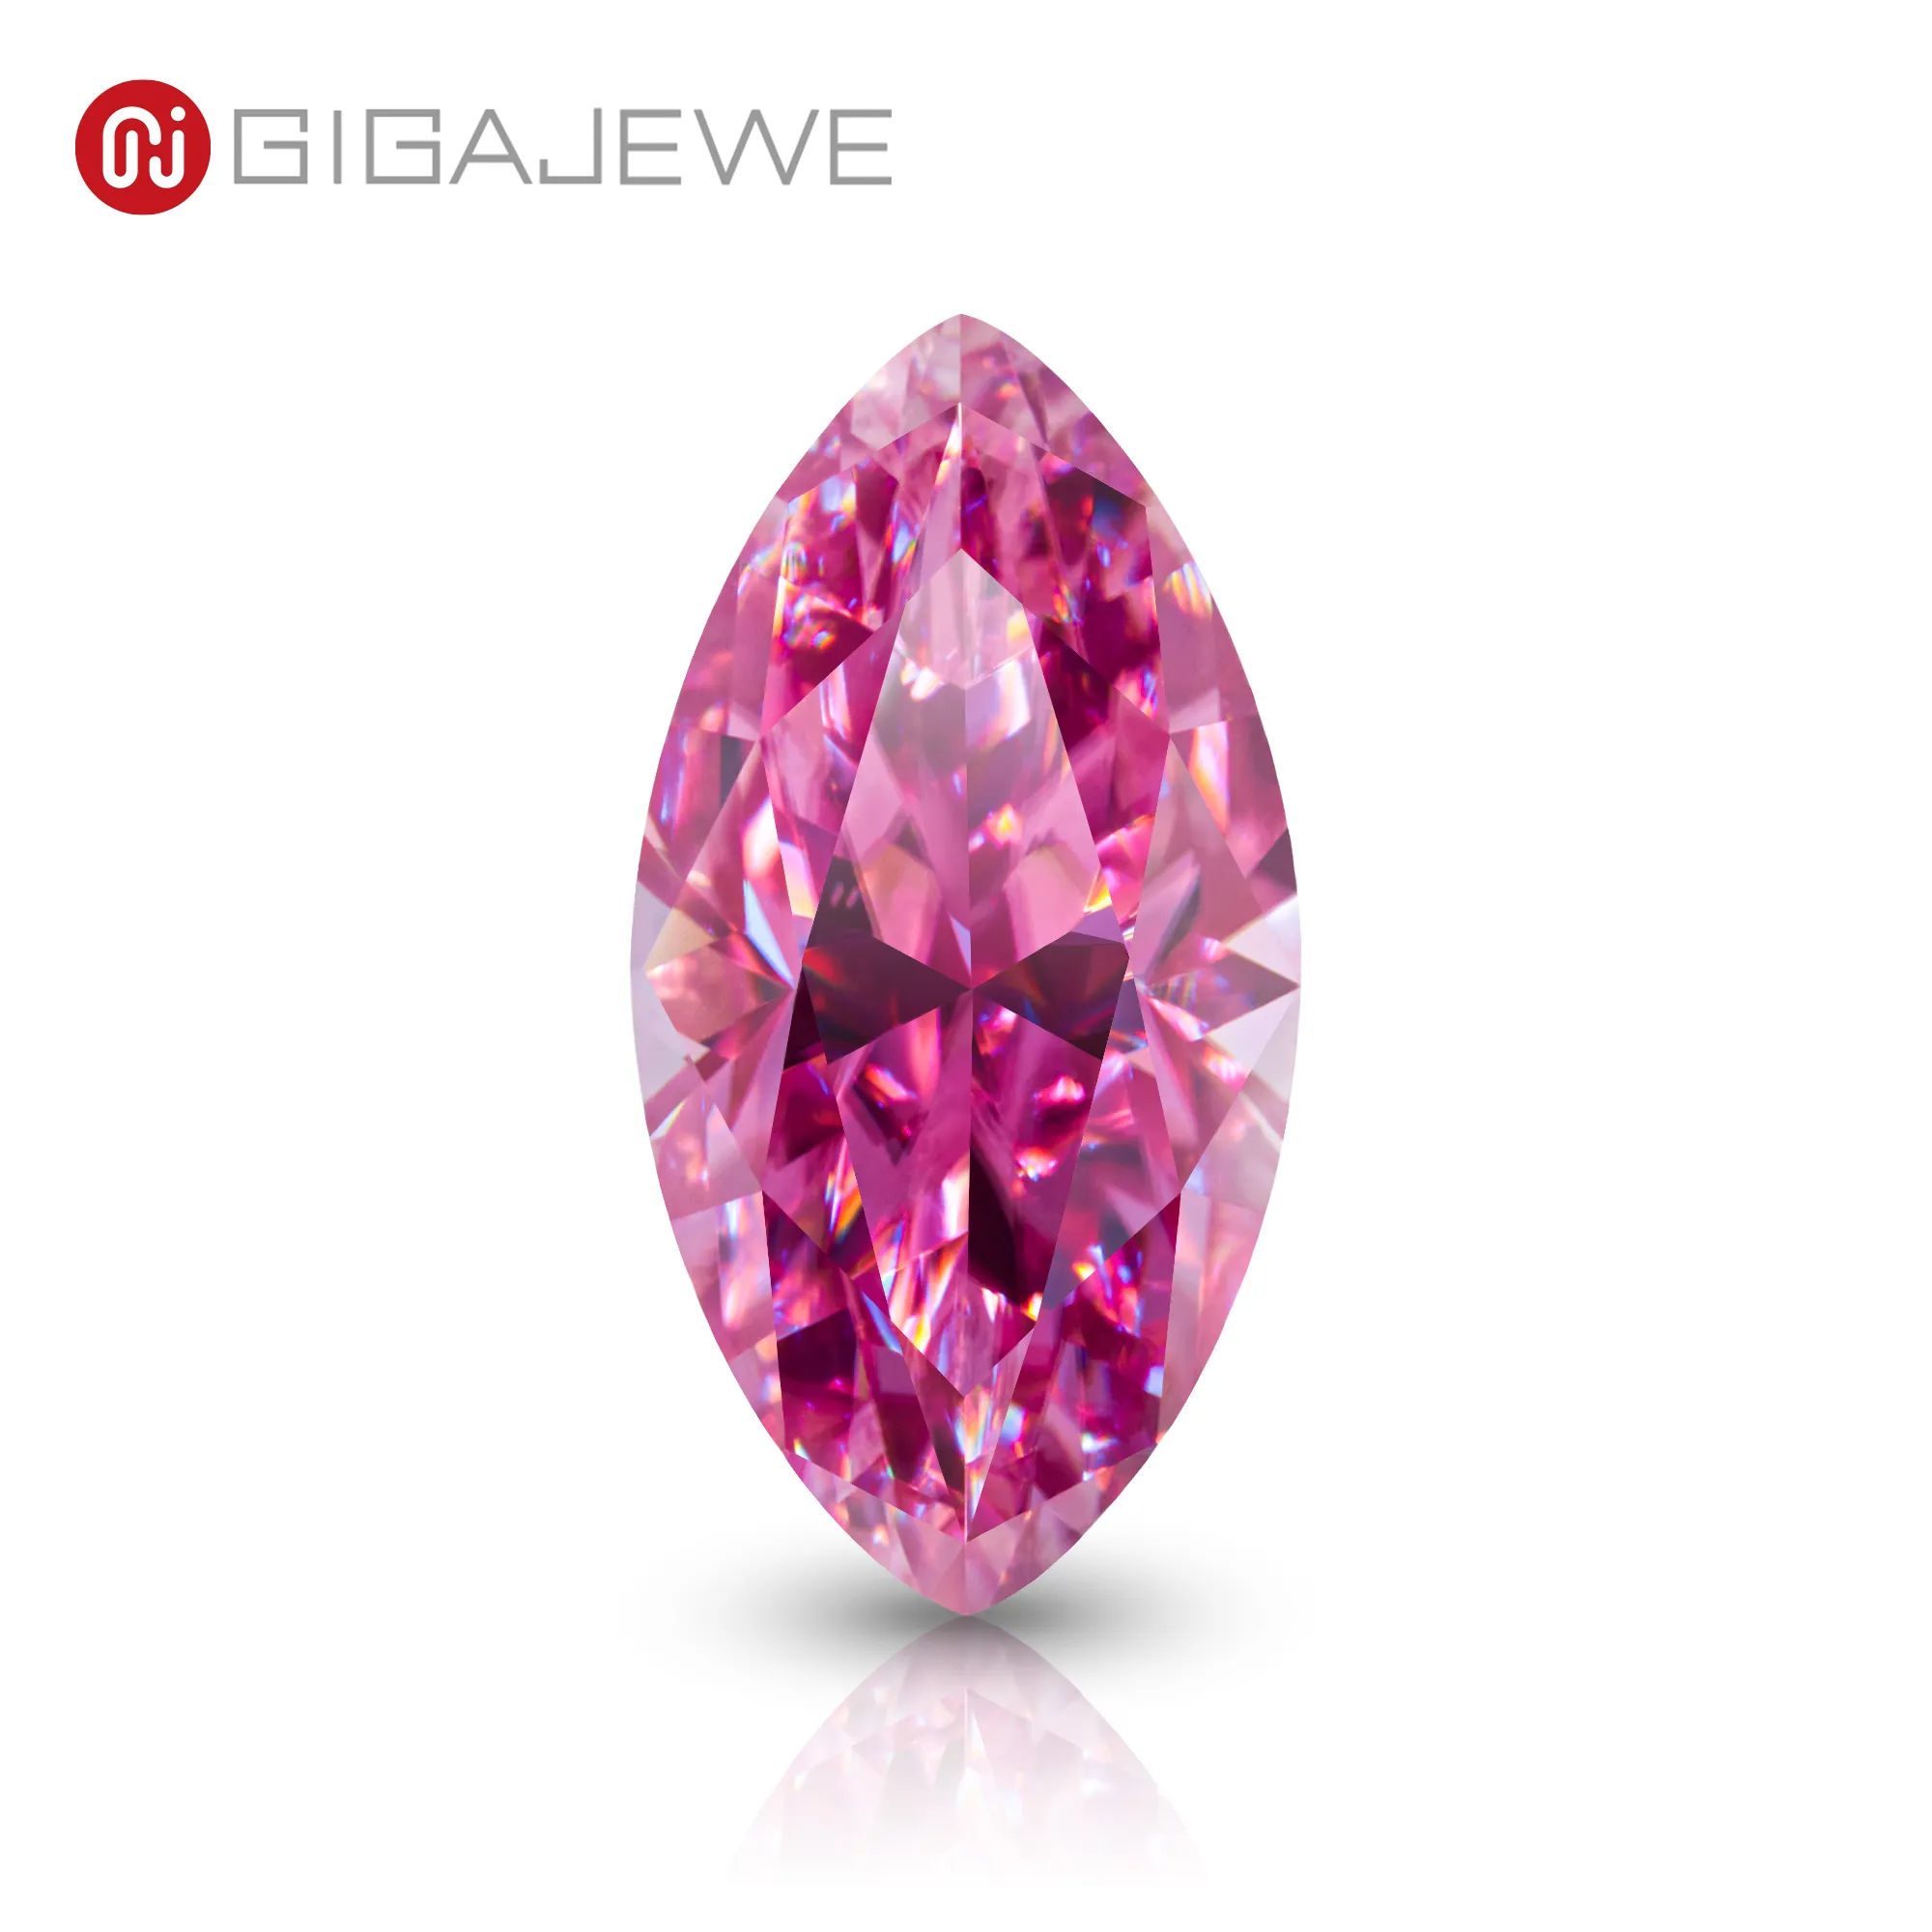 Gigajewe Pink Color Marquise Cut VVS1 Moissanite Diamond 1-3ct voor sieraden maken